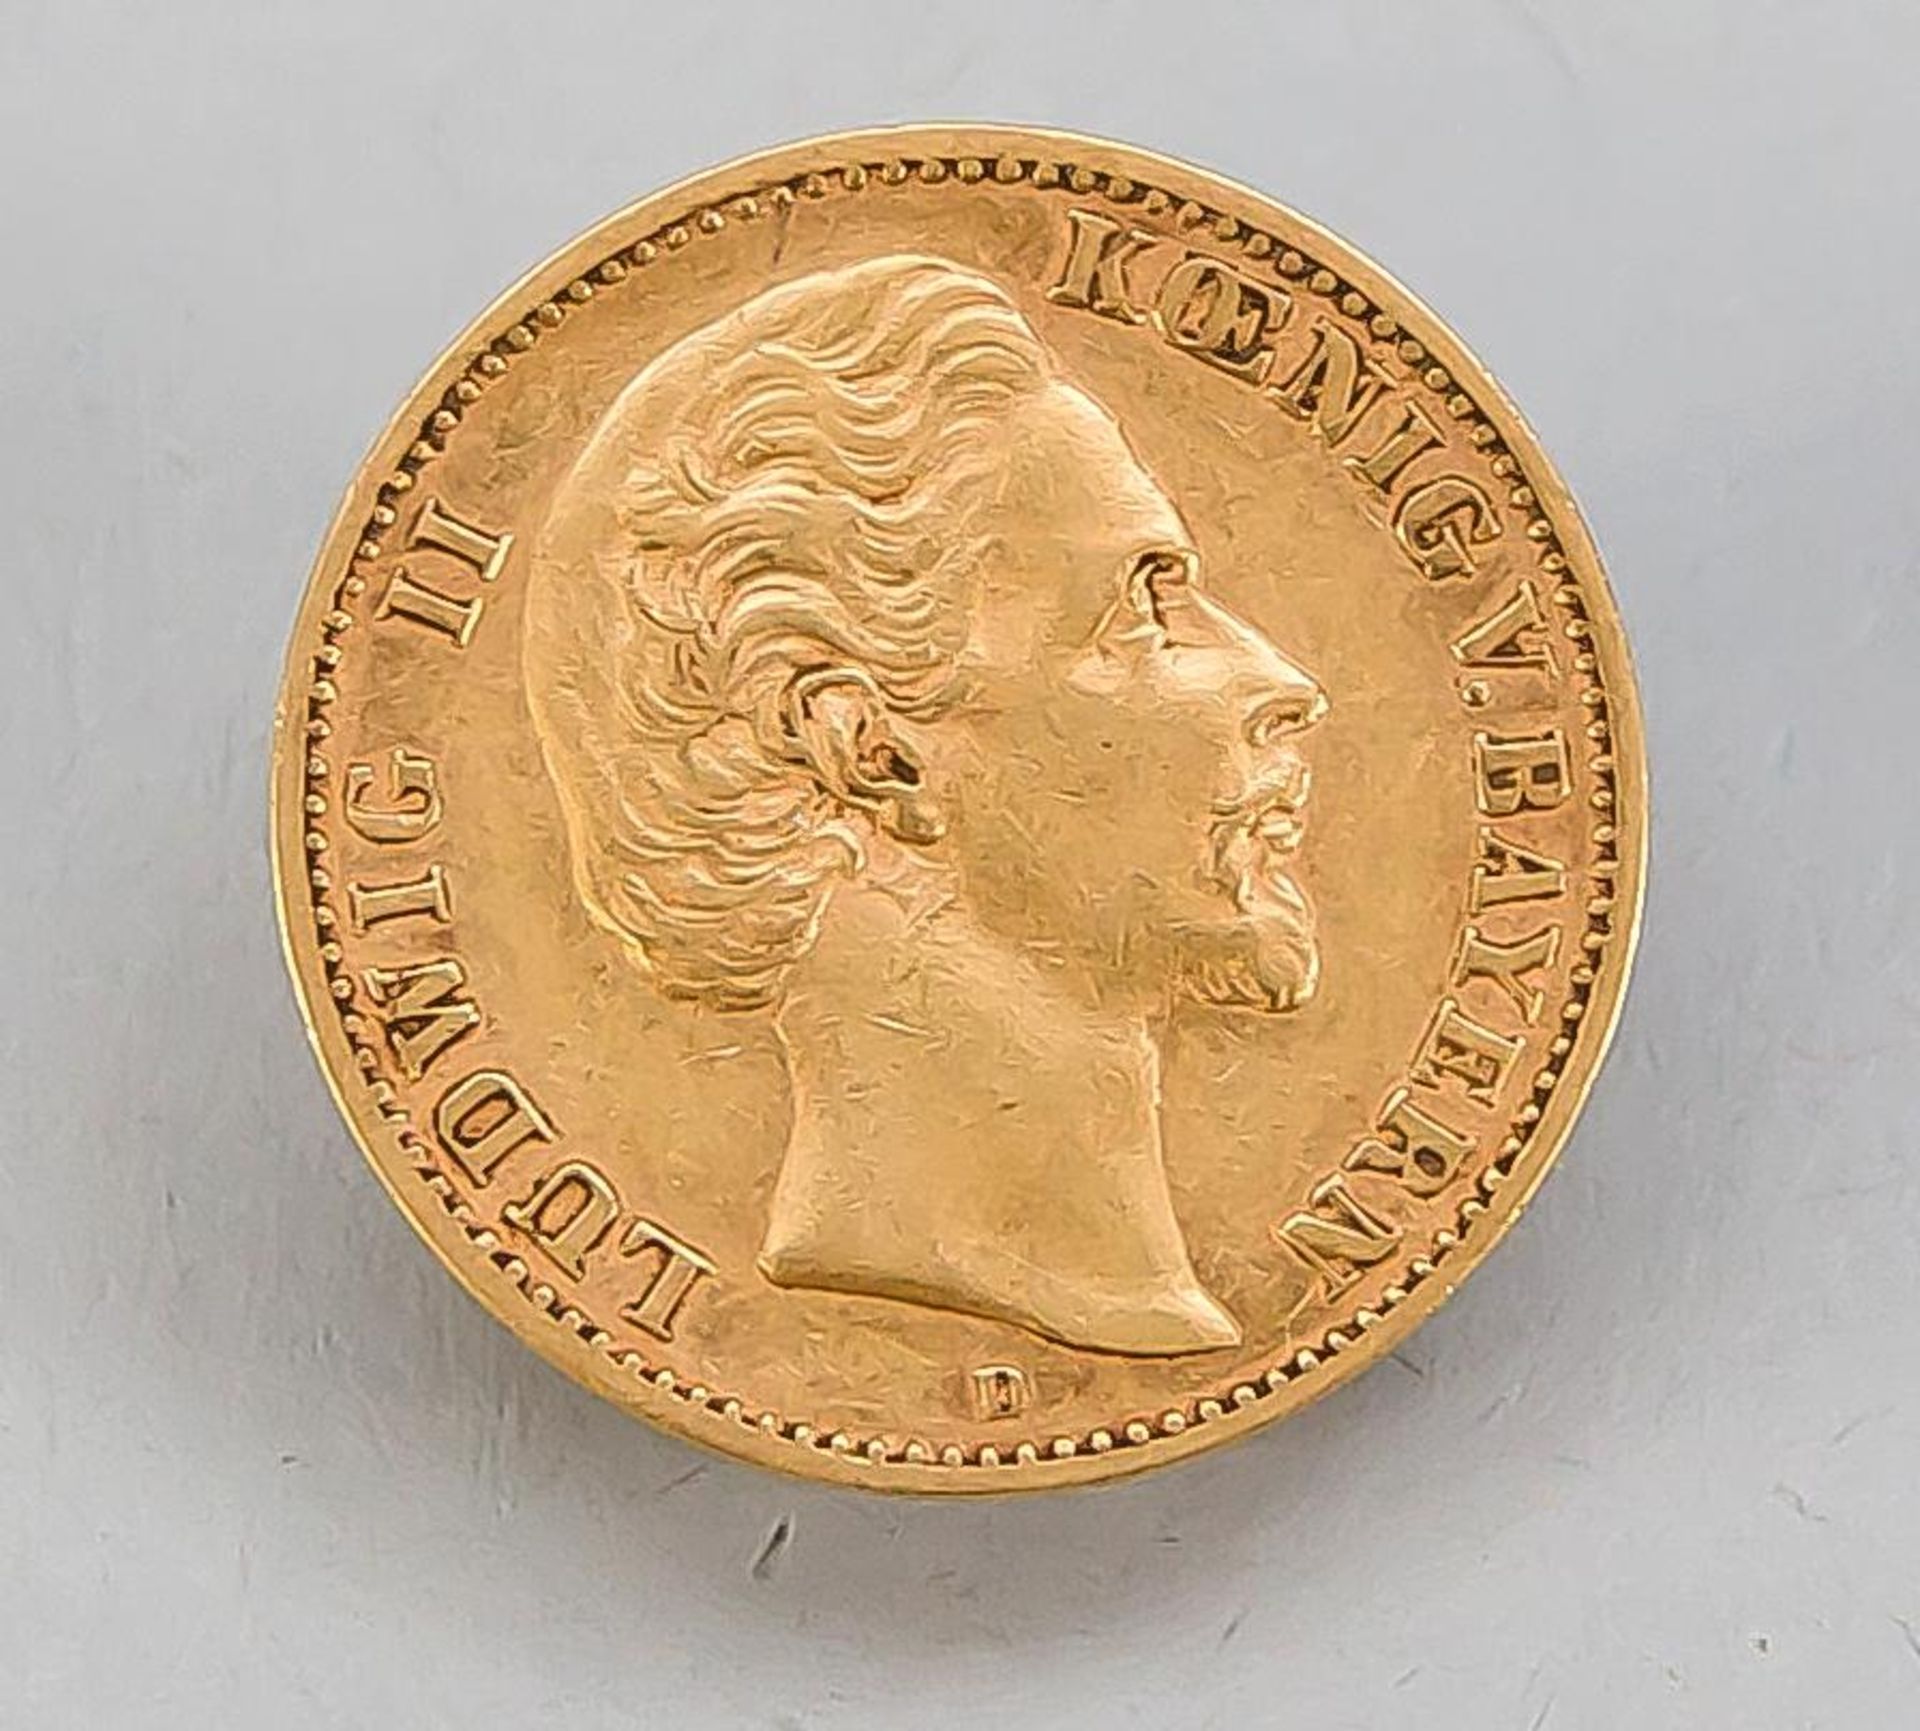 Goldmünze Deutsches Reich 10 Mark, Ludwig II König v. Bayern 1876/D, ca. 3,9 g